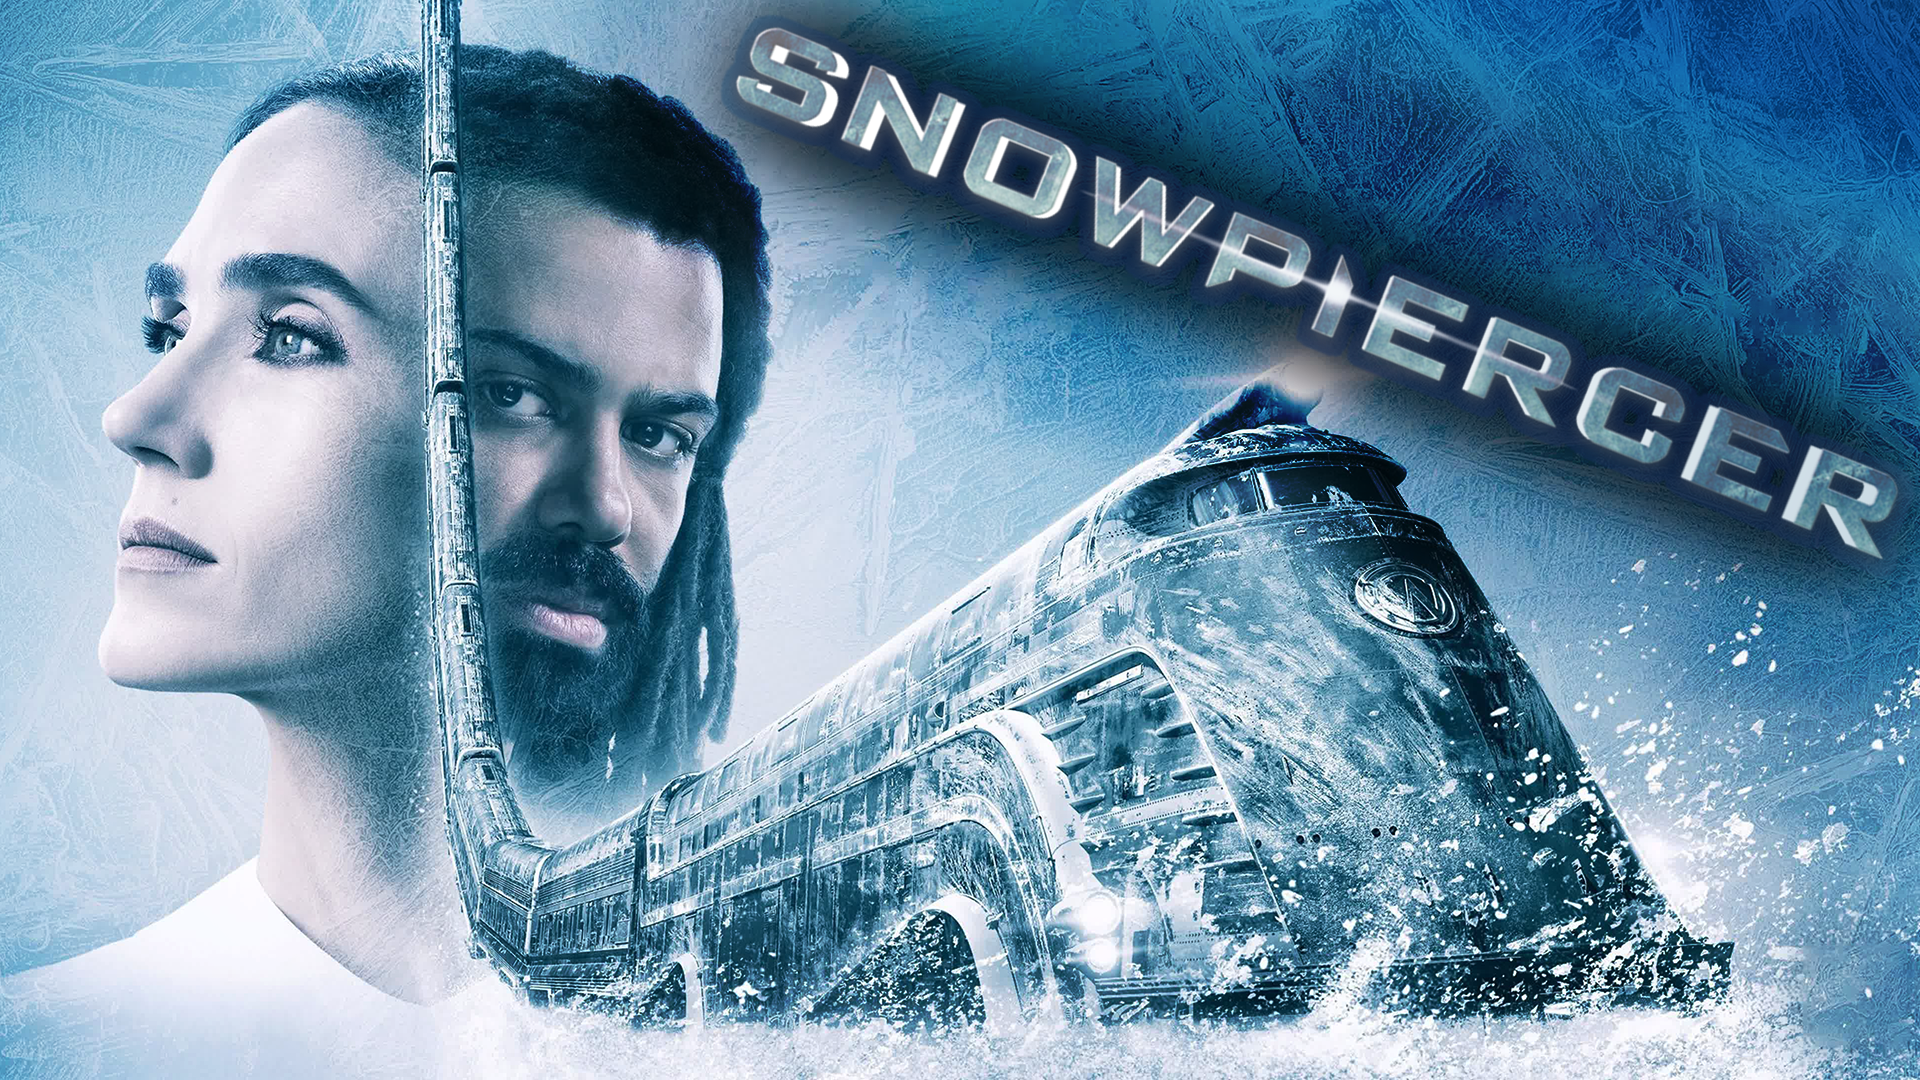 Сквозь снег – 1 сезон 9 серия / Snowpiercer